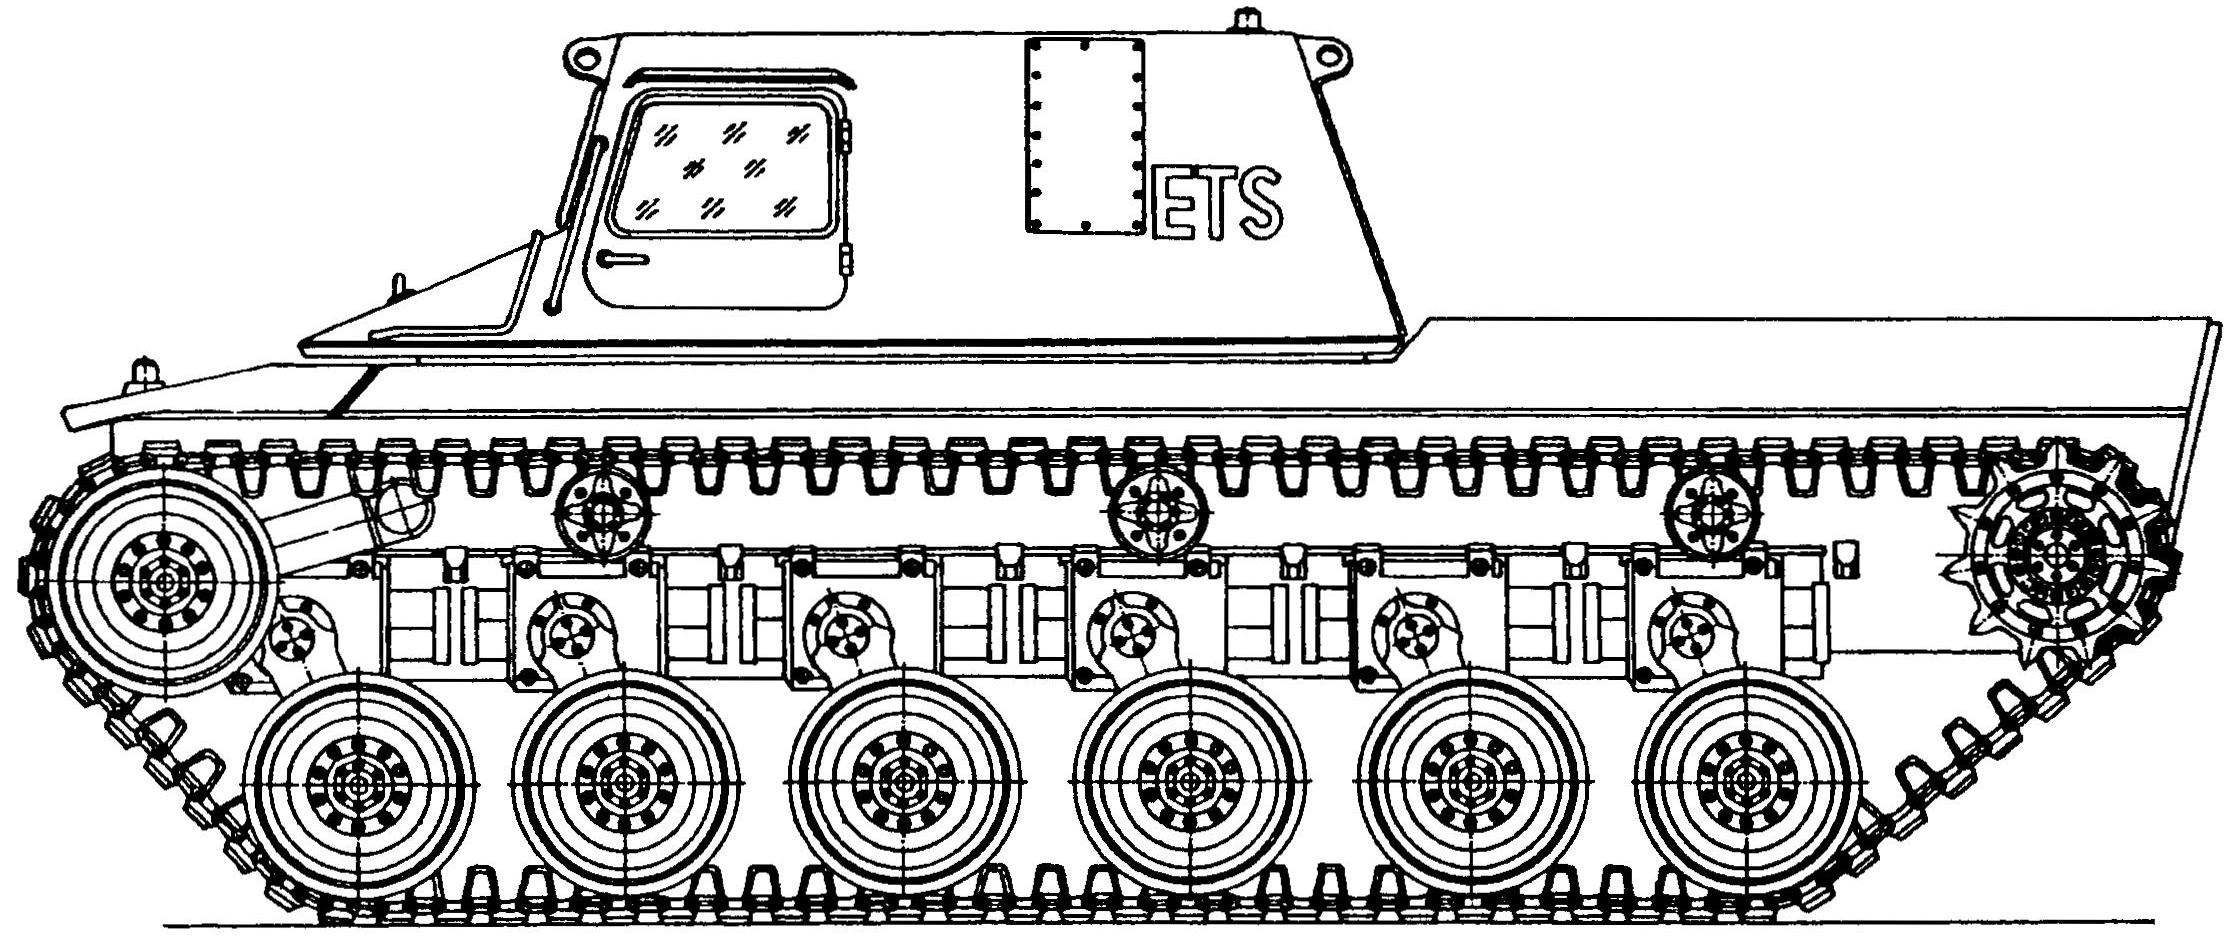 Ходовой макет шасси танка МВТ-70 (западногерманский вариант) при максимальном клиренсе